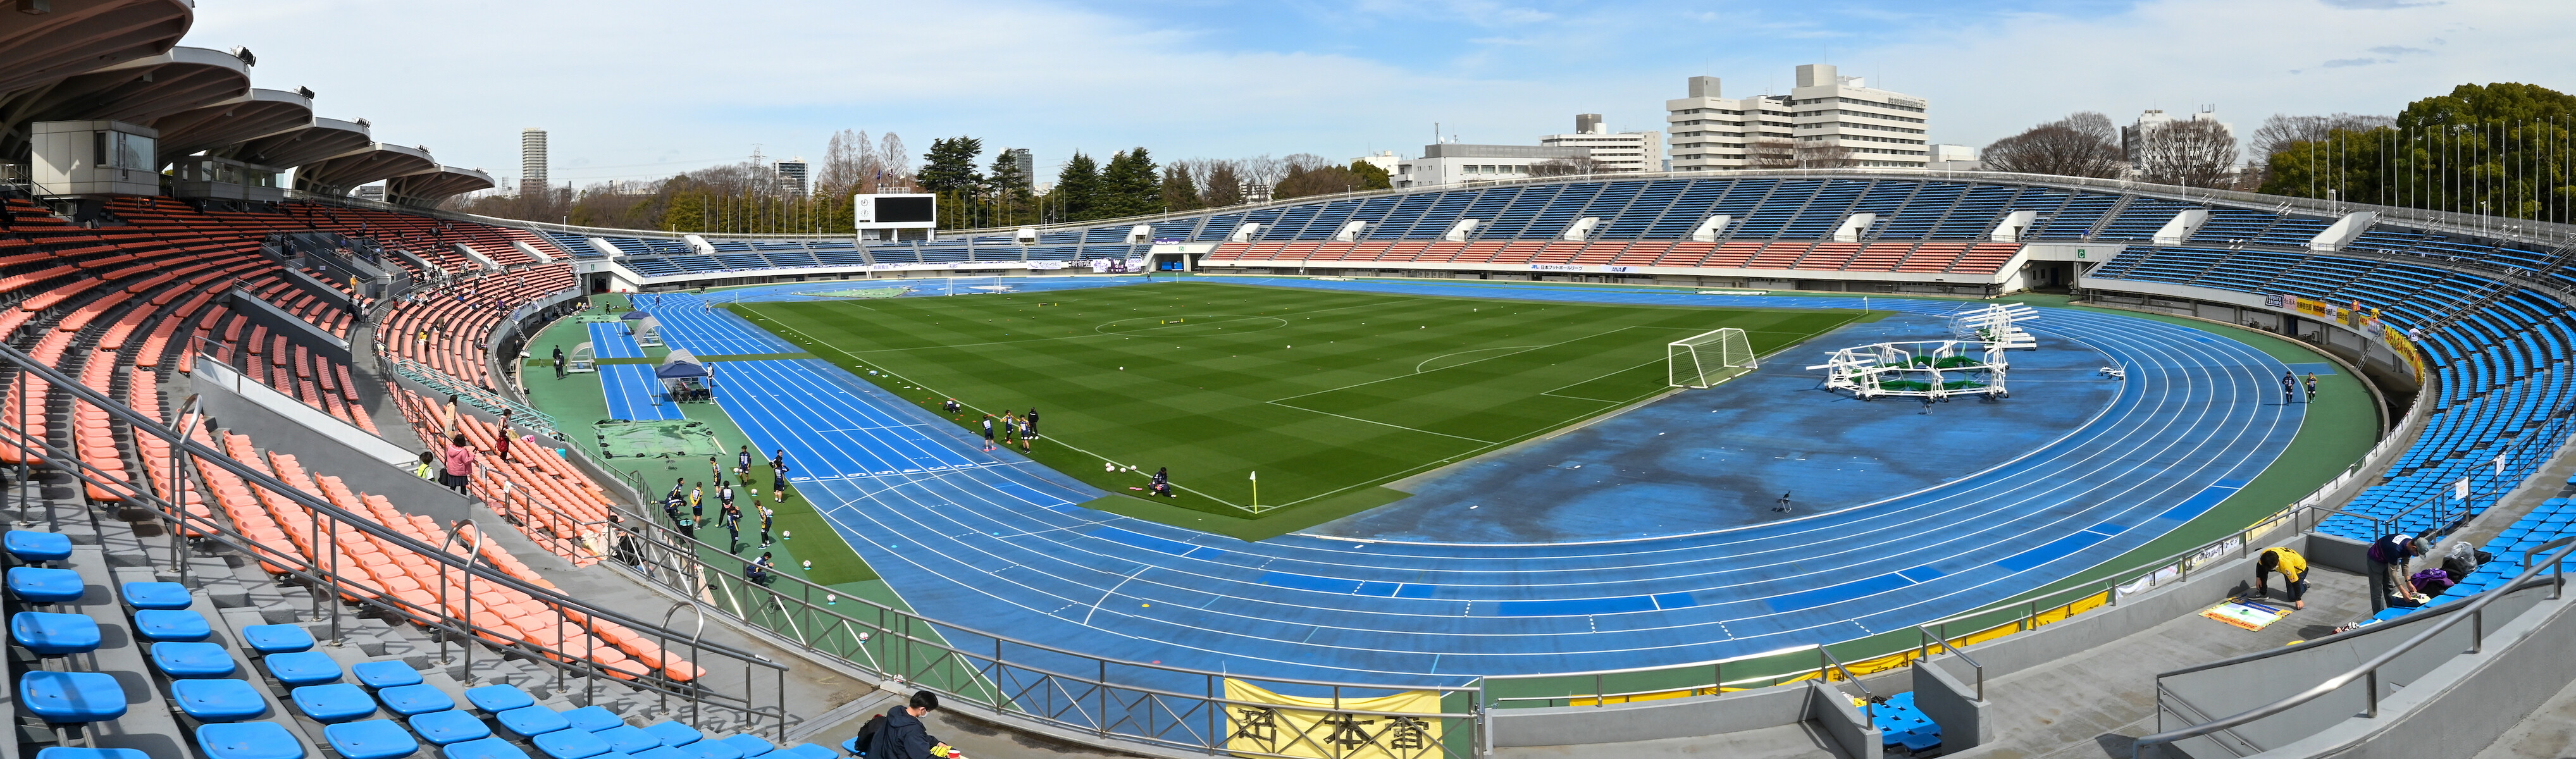 22年3月19日 新宿vsしまね 駒沢オリンピック公園総合運動場陸上競技場 パノラミックパラノイド